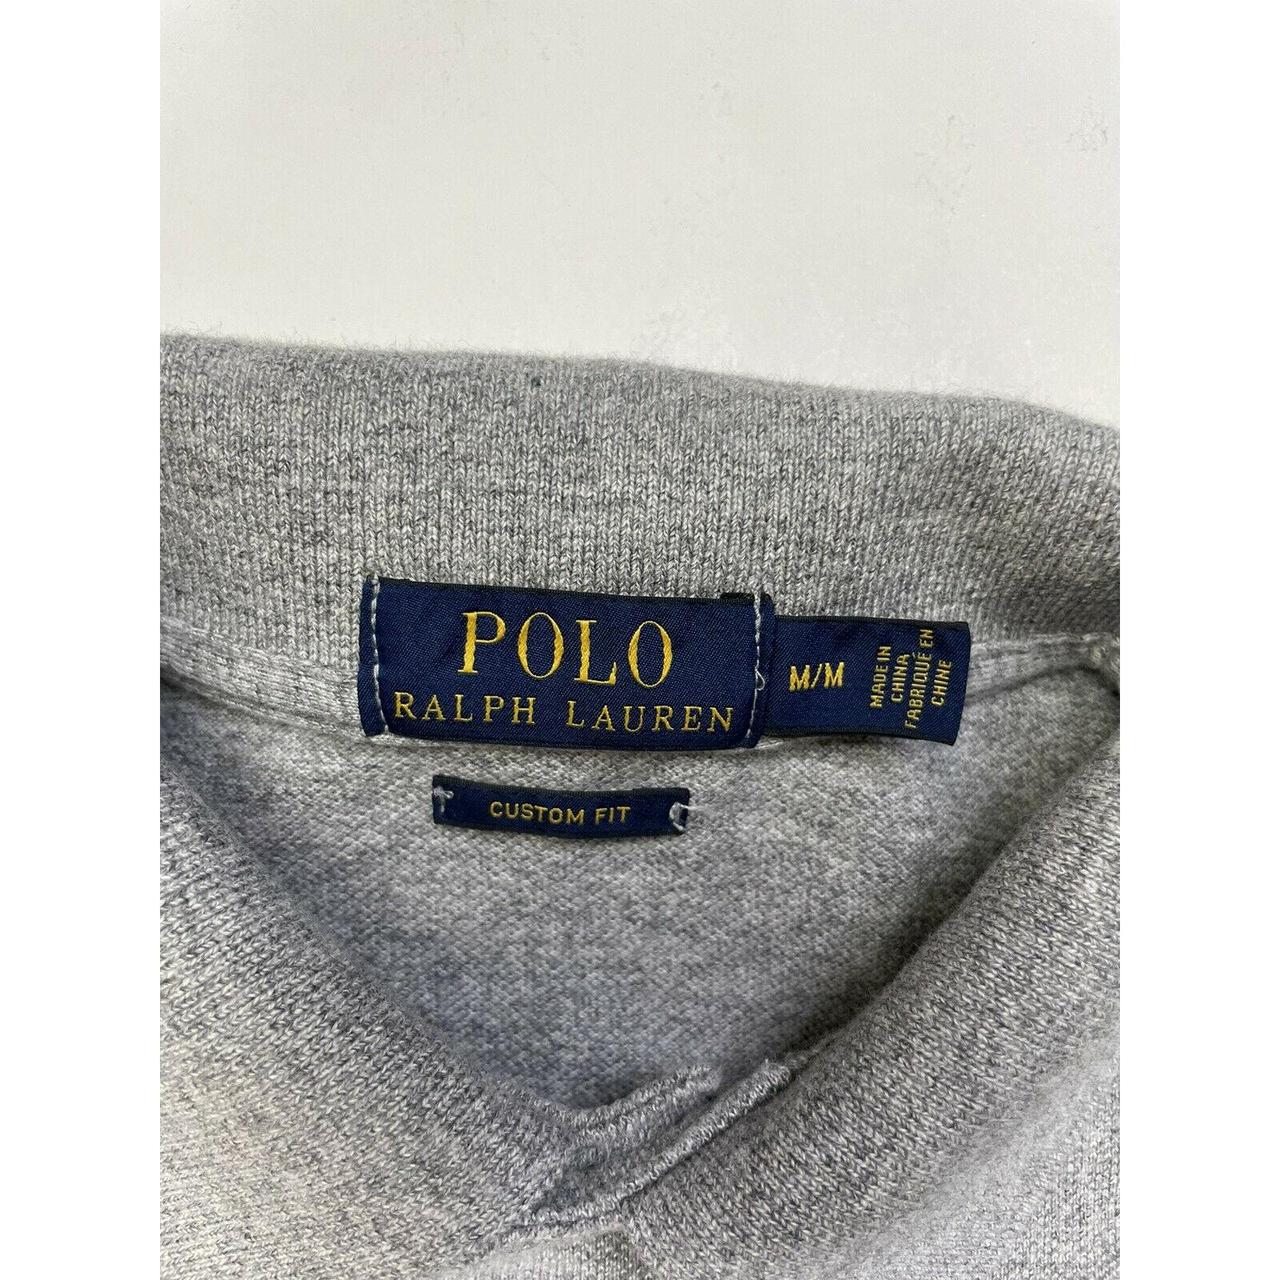 Polo Ralph Lauren Polo Bear Shirt Men Adult Medium... - Depop